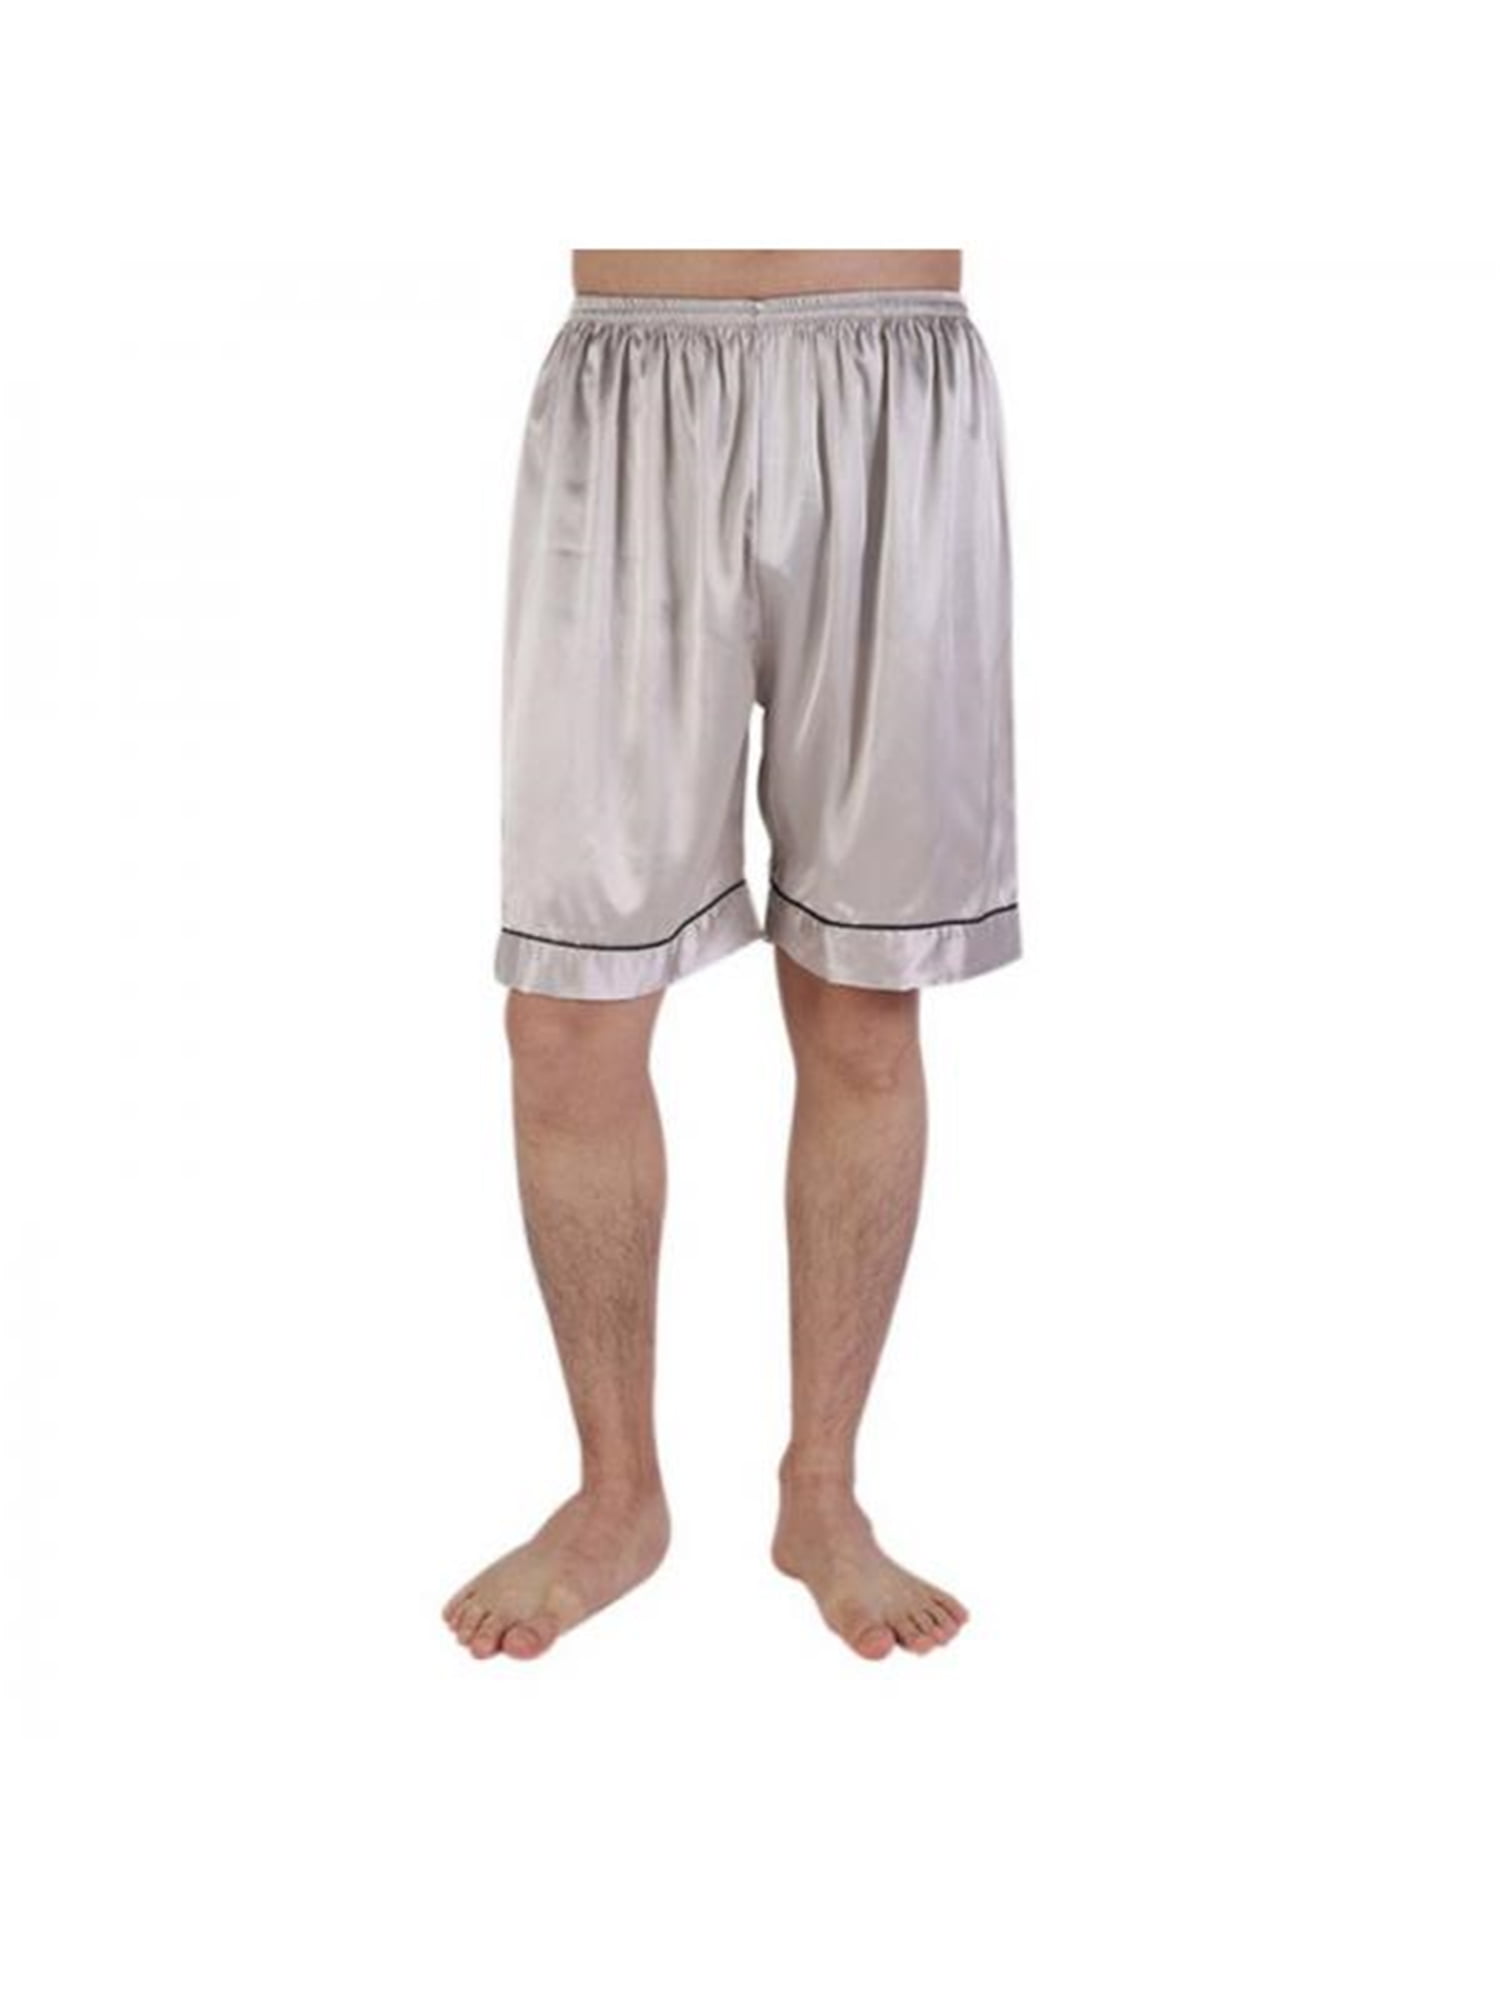 Men Silk Shorts Satin Lounge Trunks Beachwear Boxer Short Pant Pajamas Sleepwear